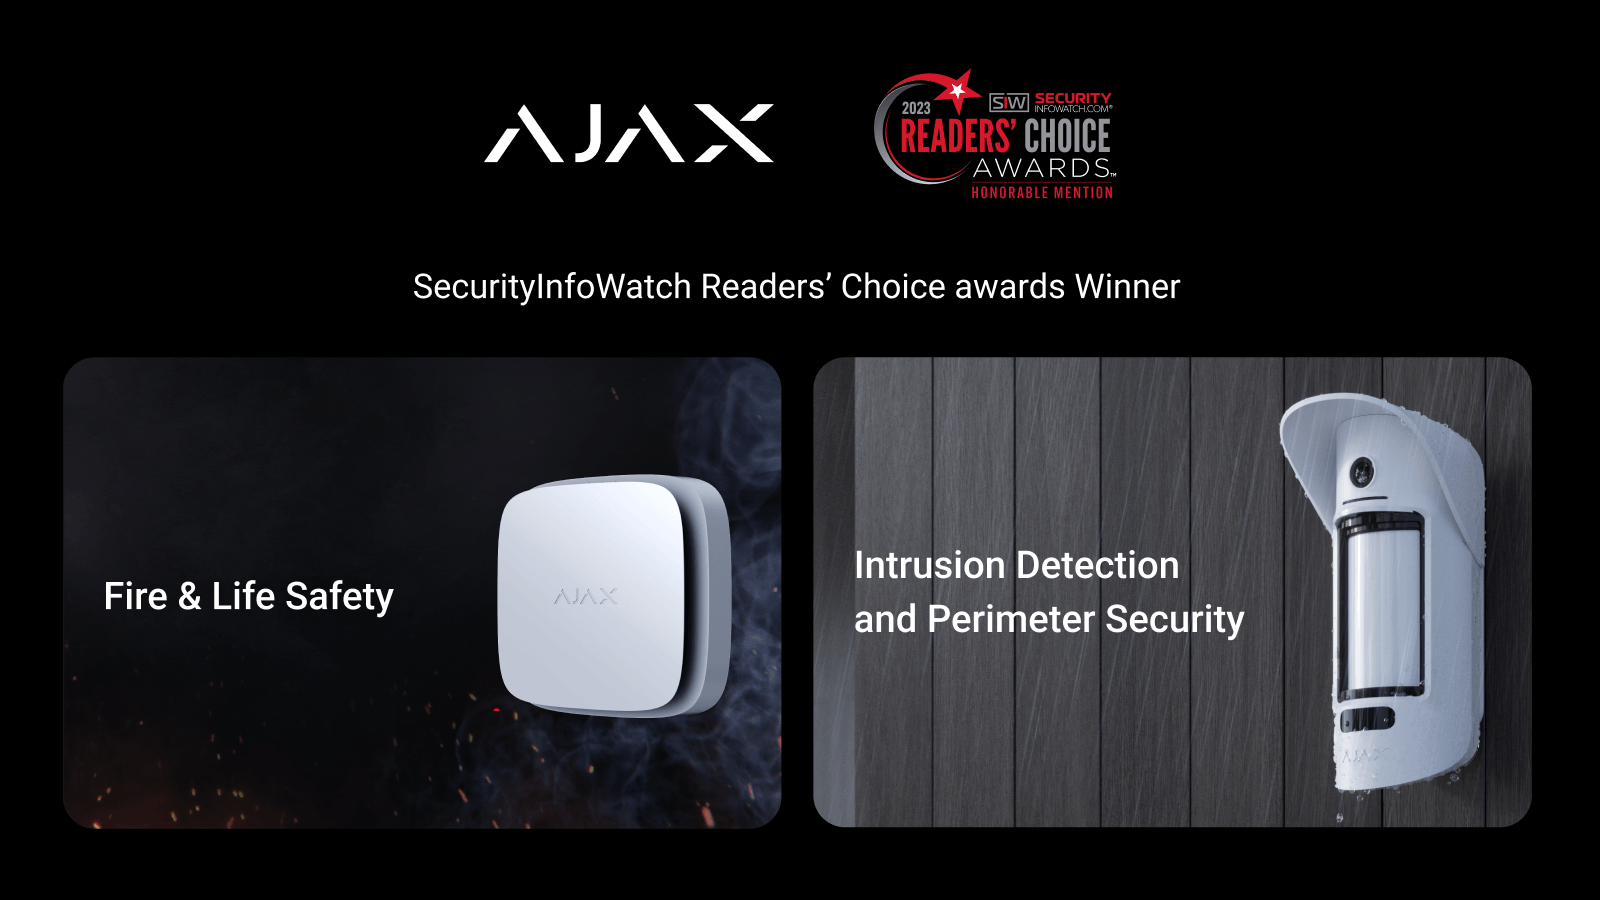 A Ajax Systems vence em 2 categorias no SecurityInfoWatch.com Readers’ Choice Awards nos EUA